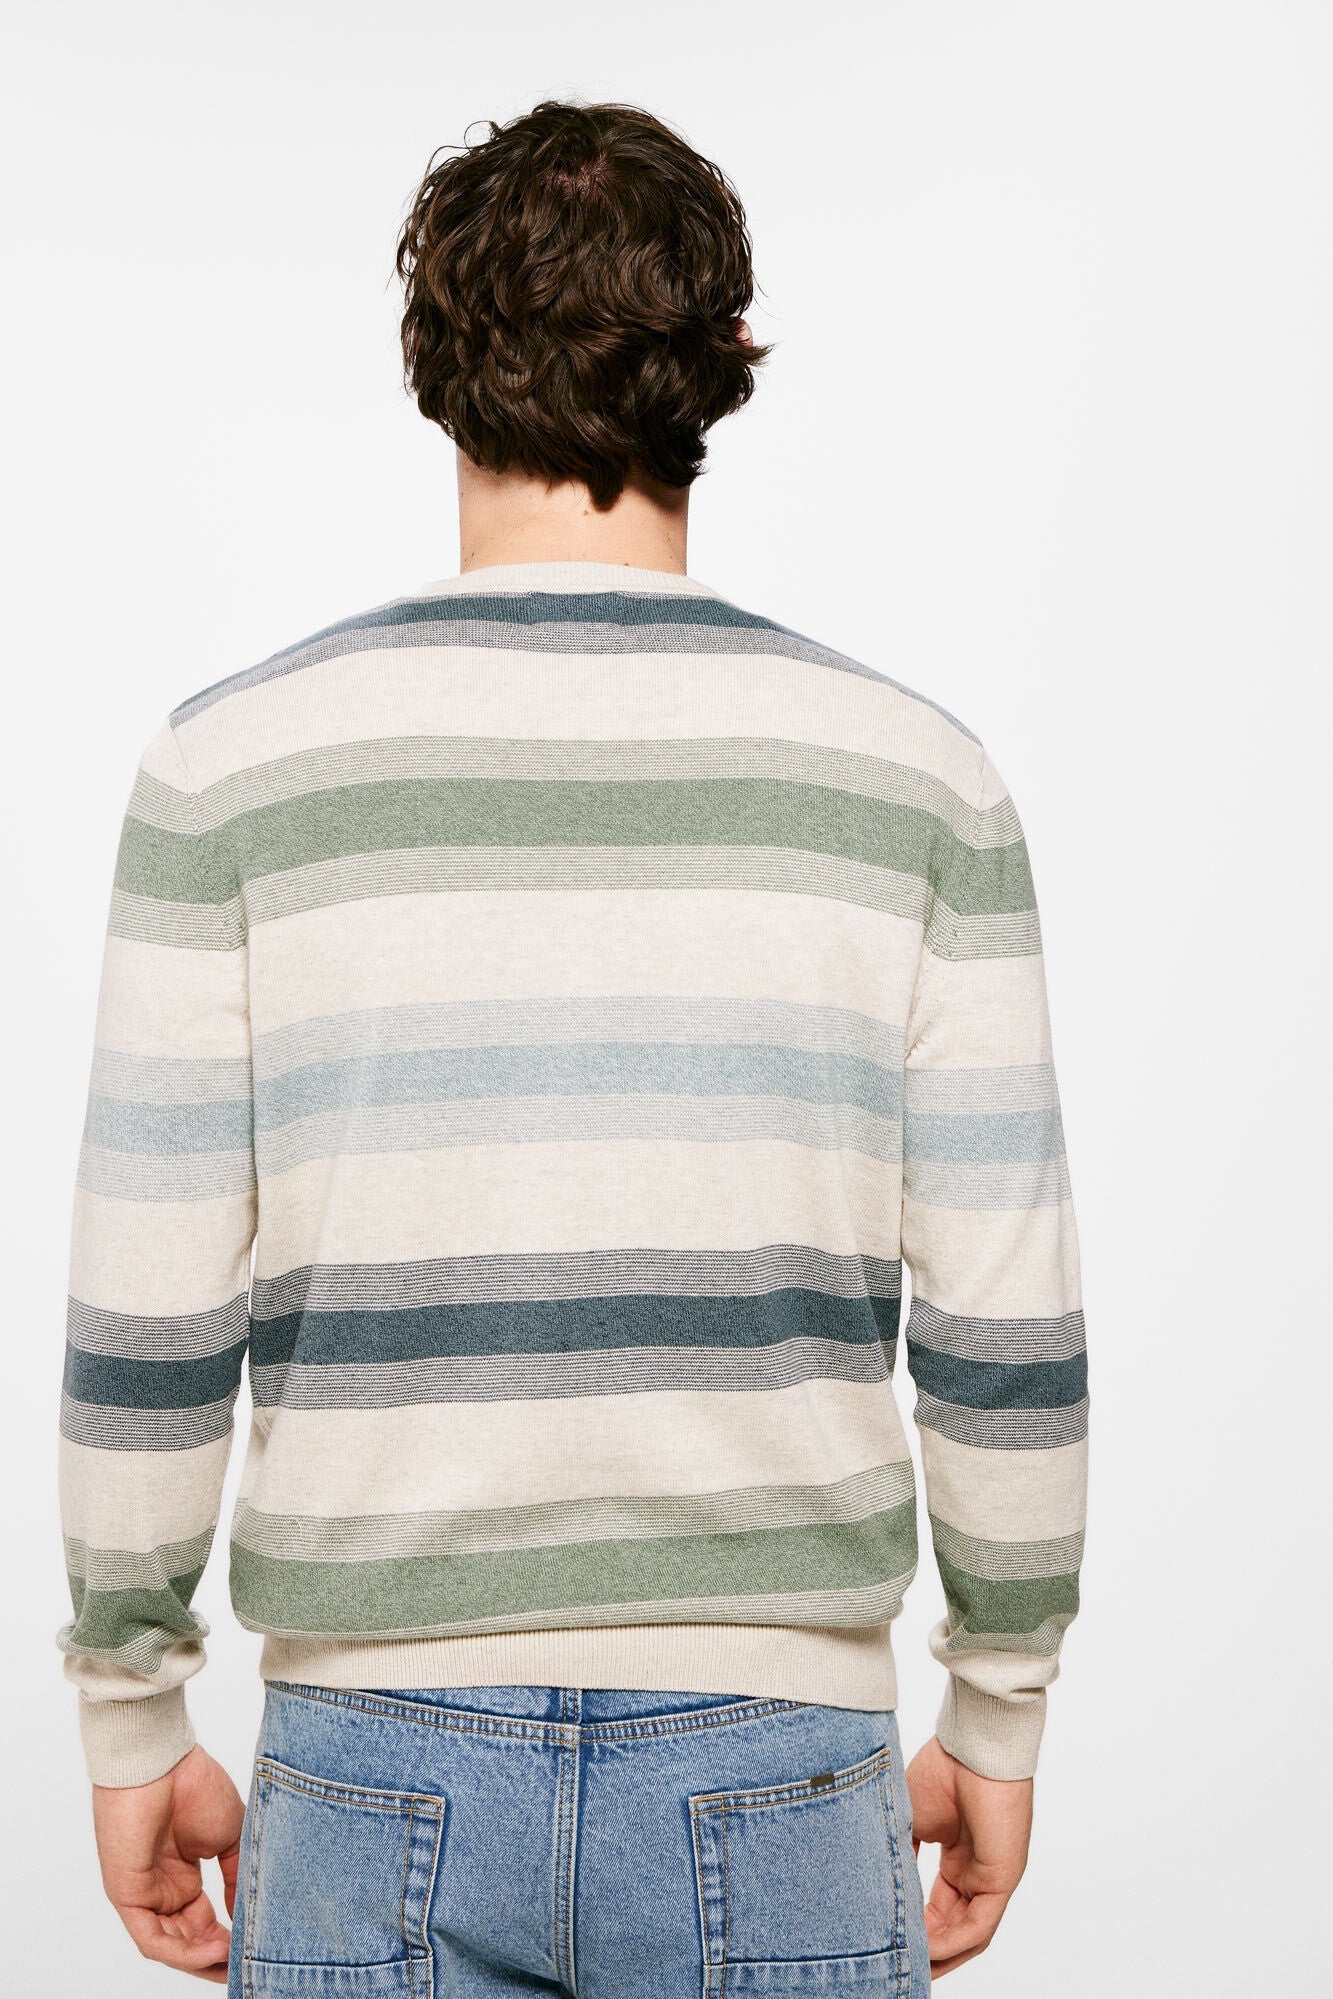 Patterned coloured striped jumper